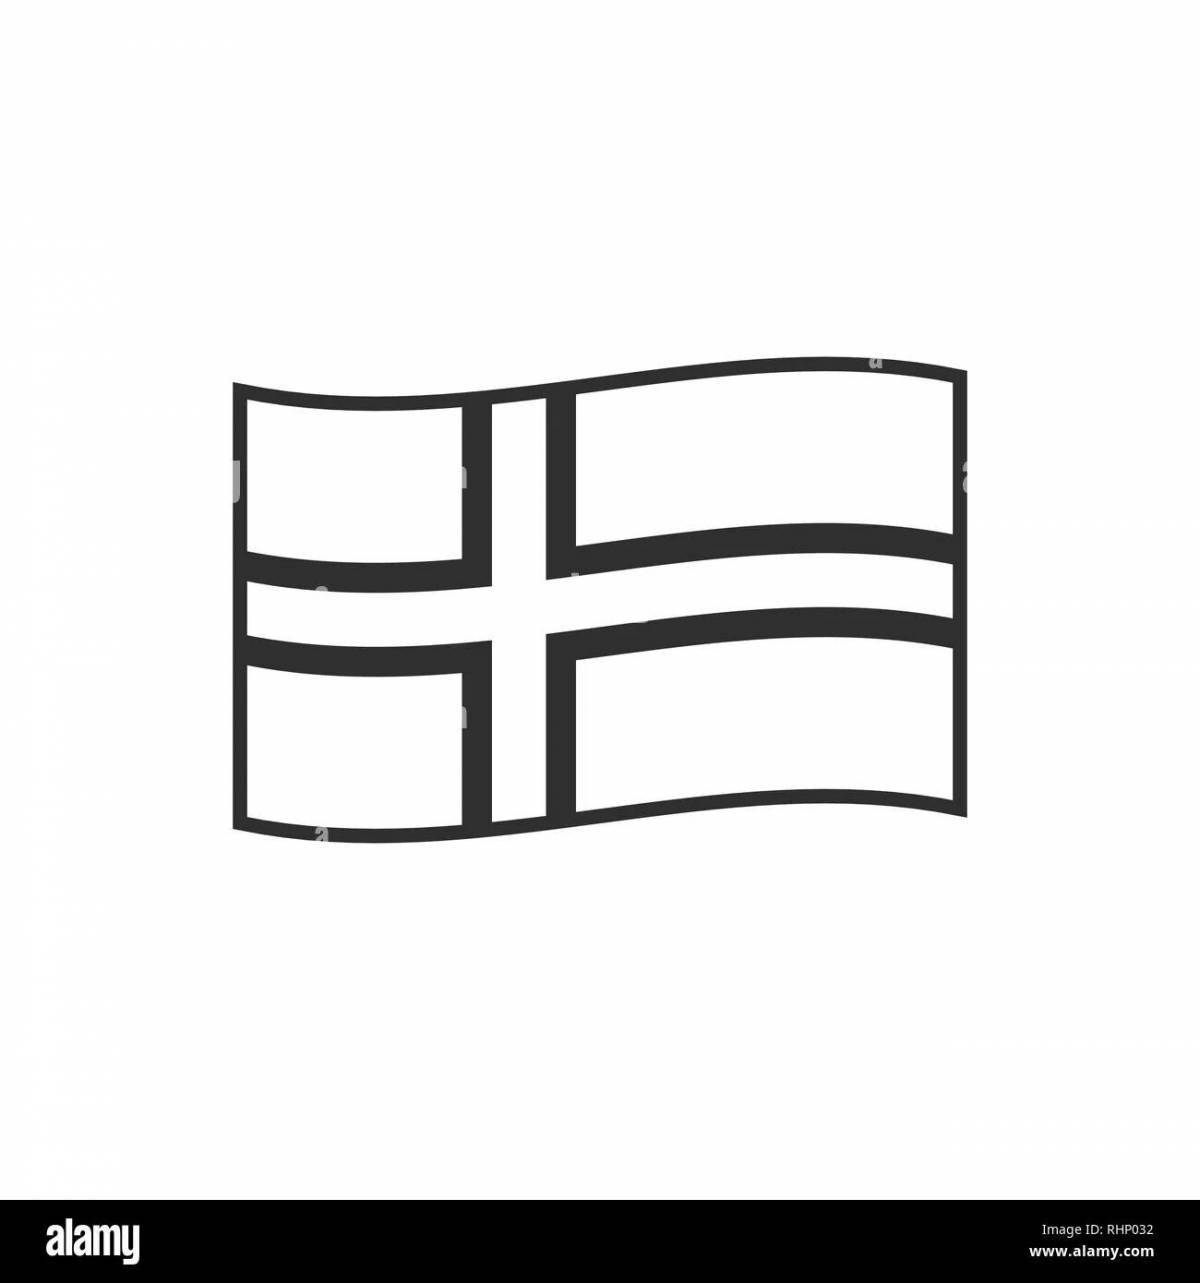 Раскраска причудливый флаг норвегии